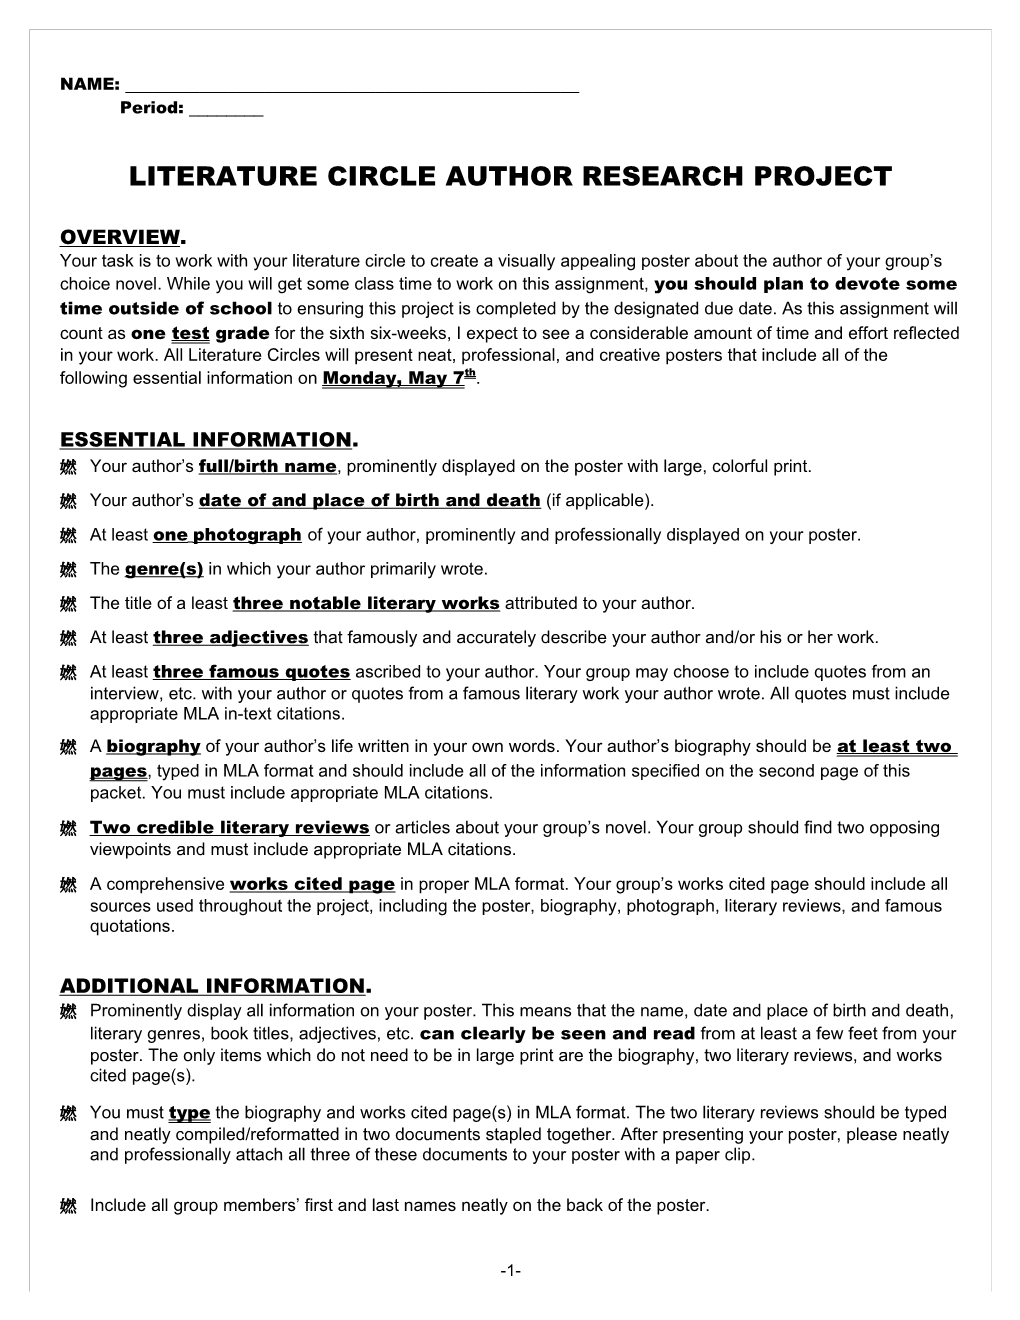 Literature Circle Research Mini-Project